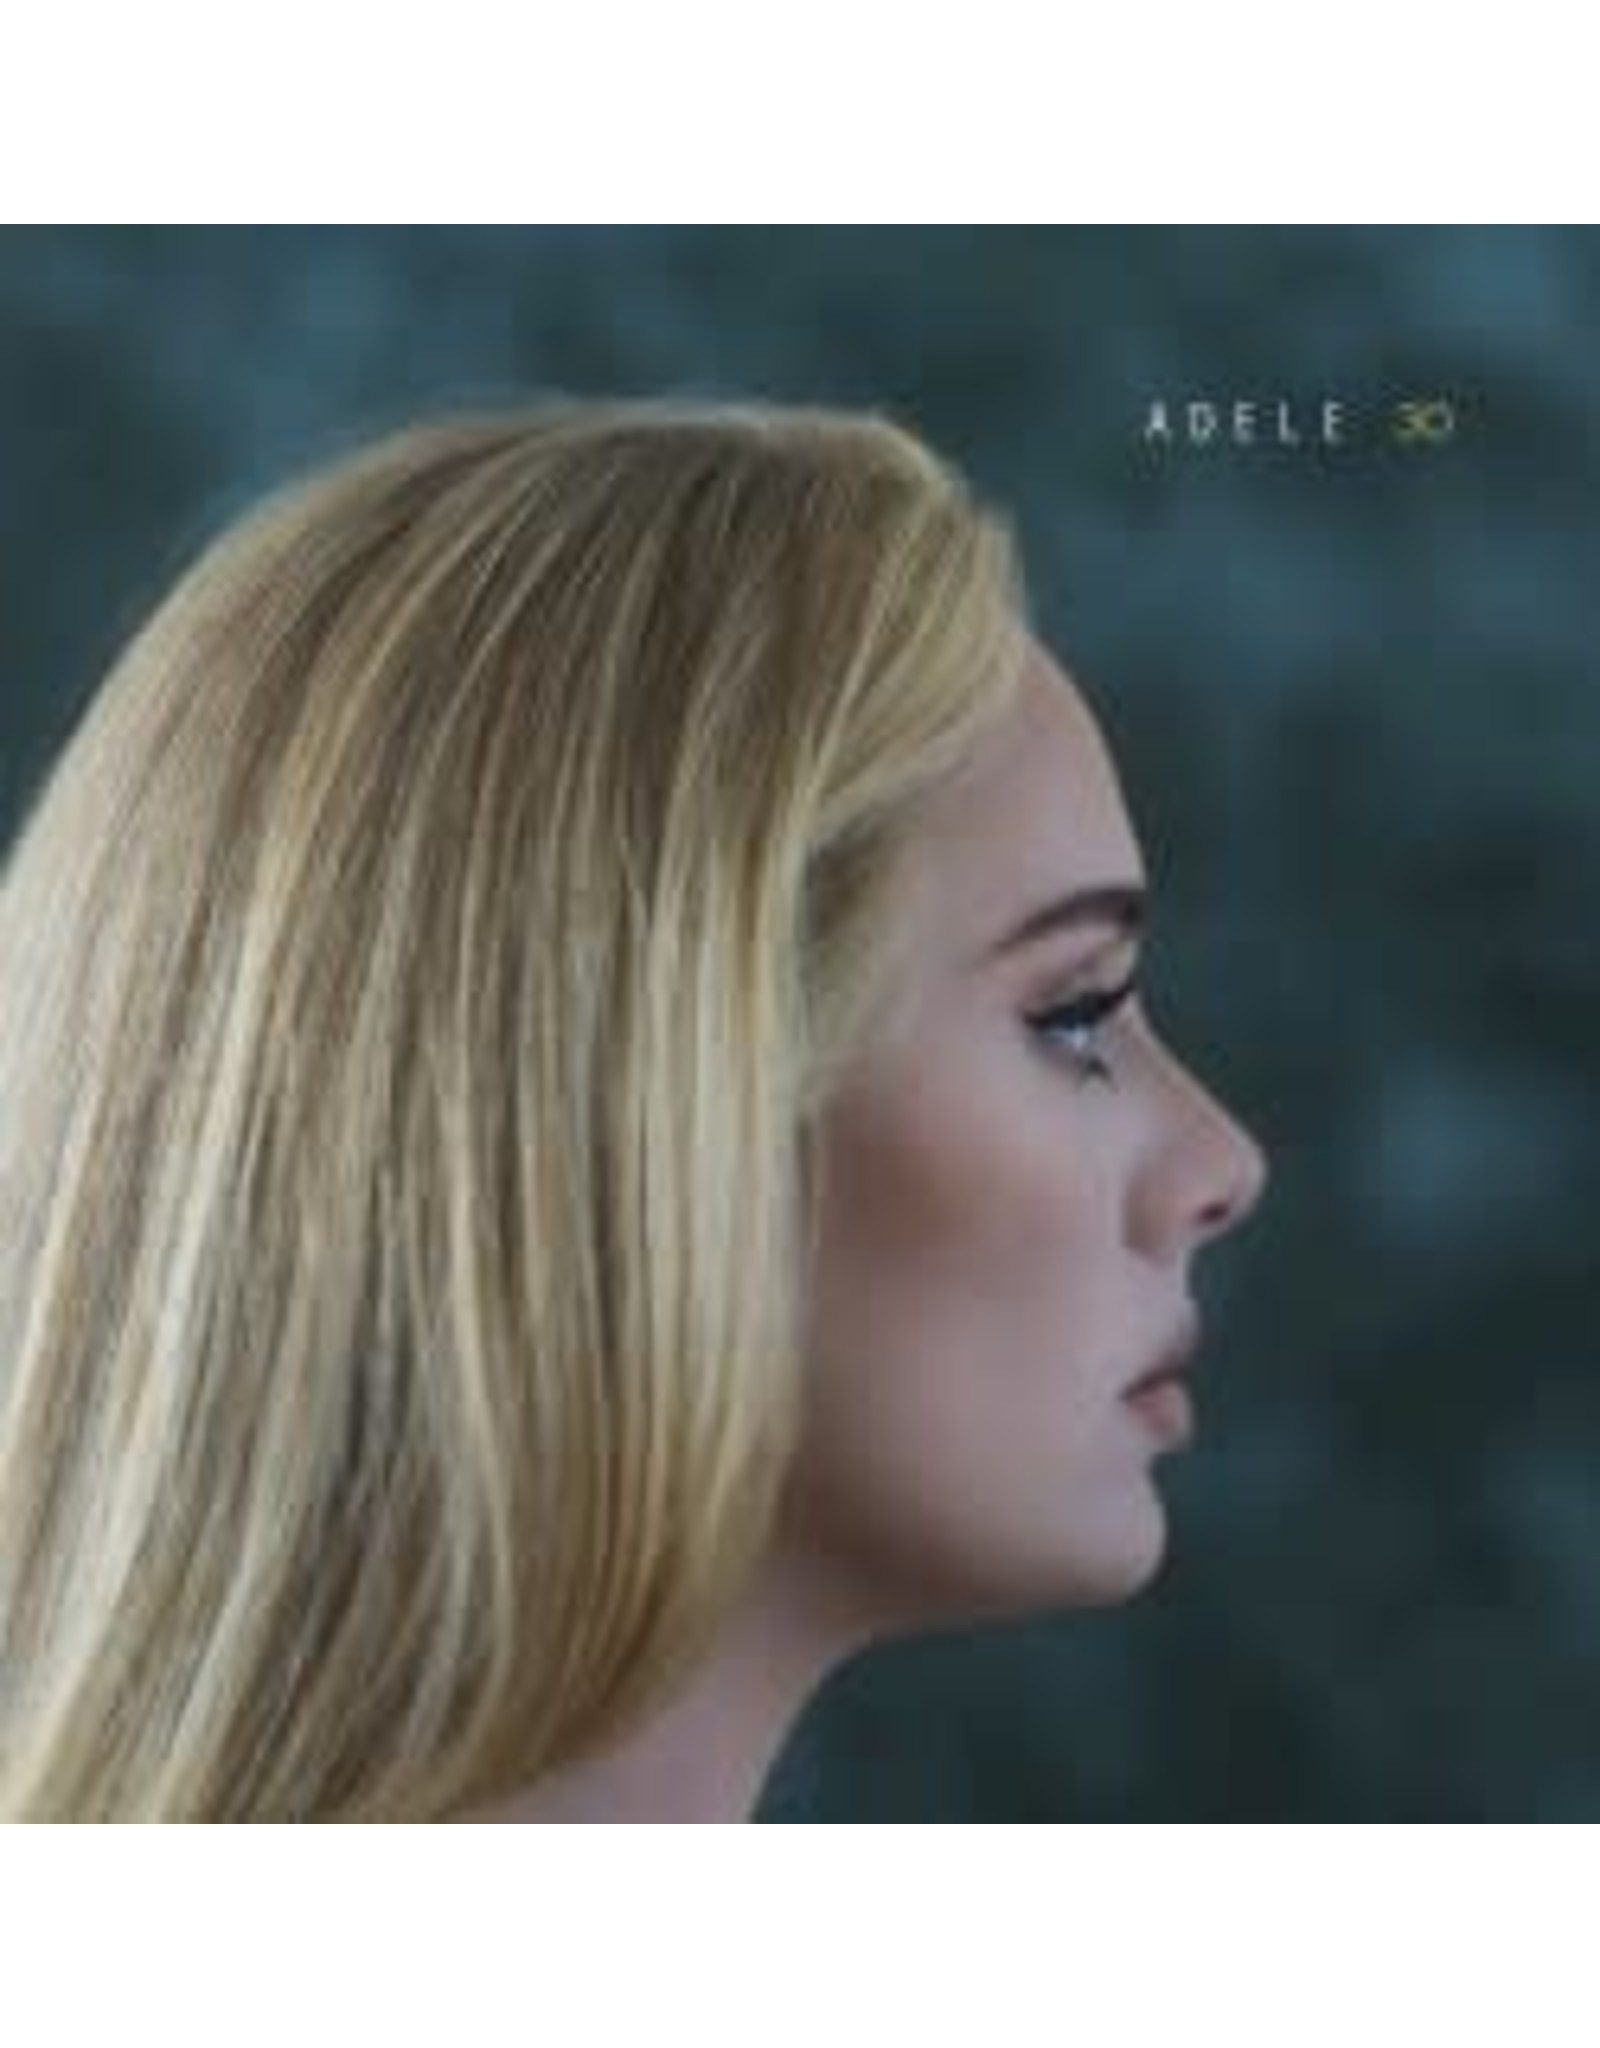 Adele  30  CD